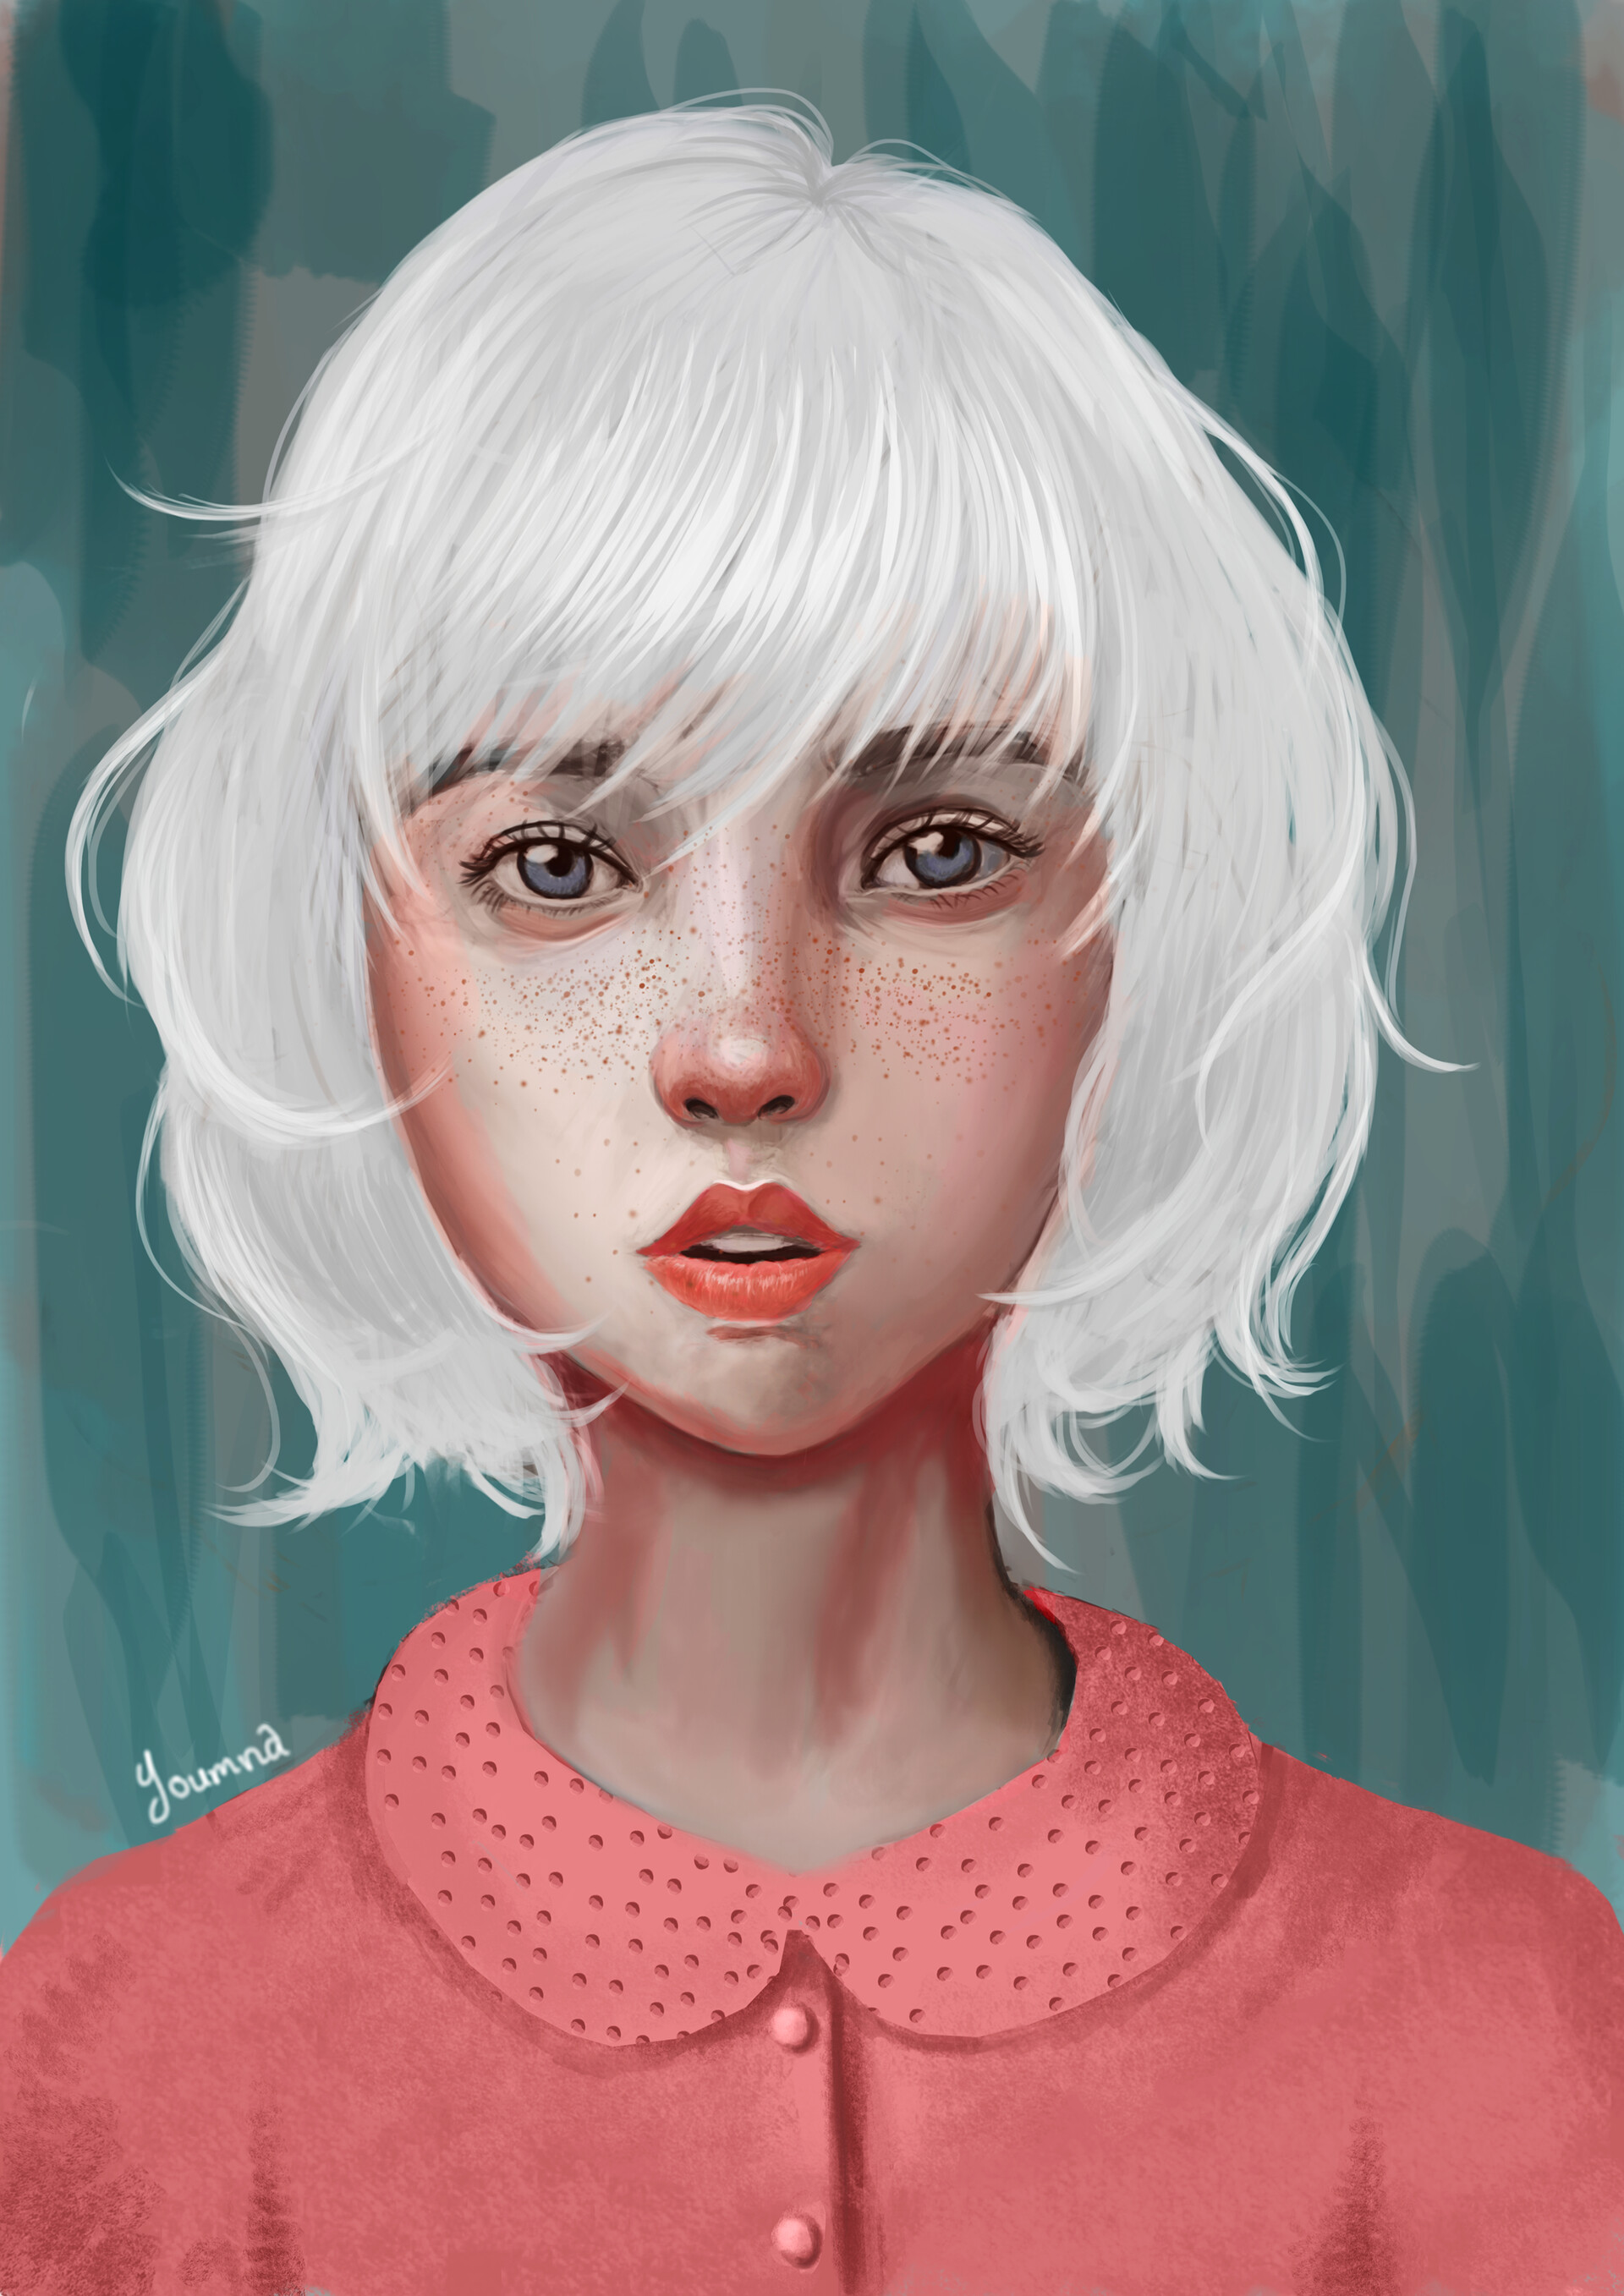 ArtStation - White hair girl